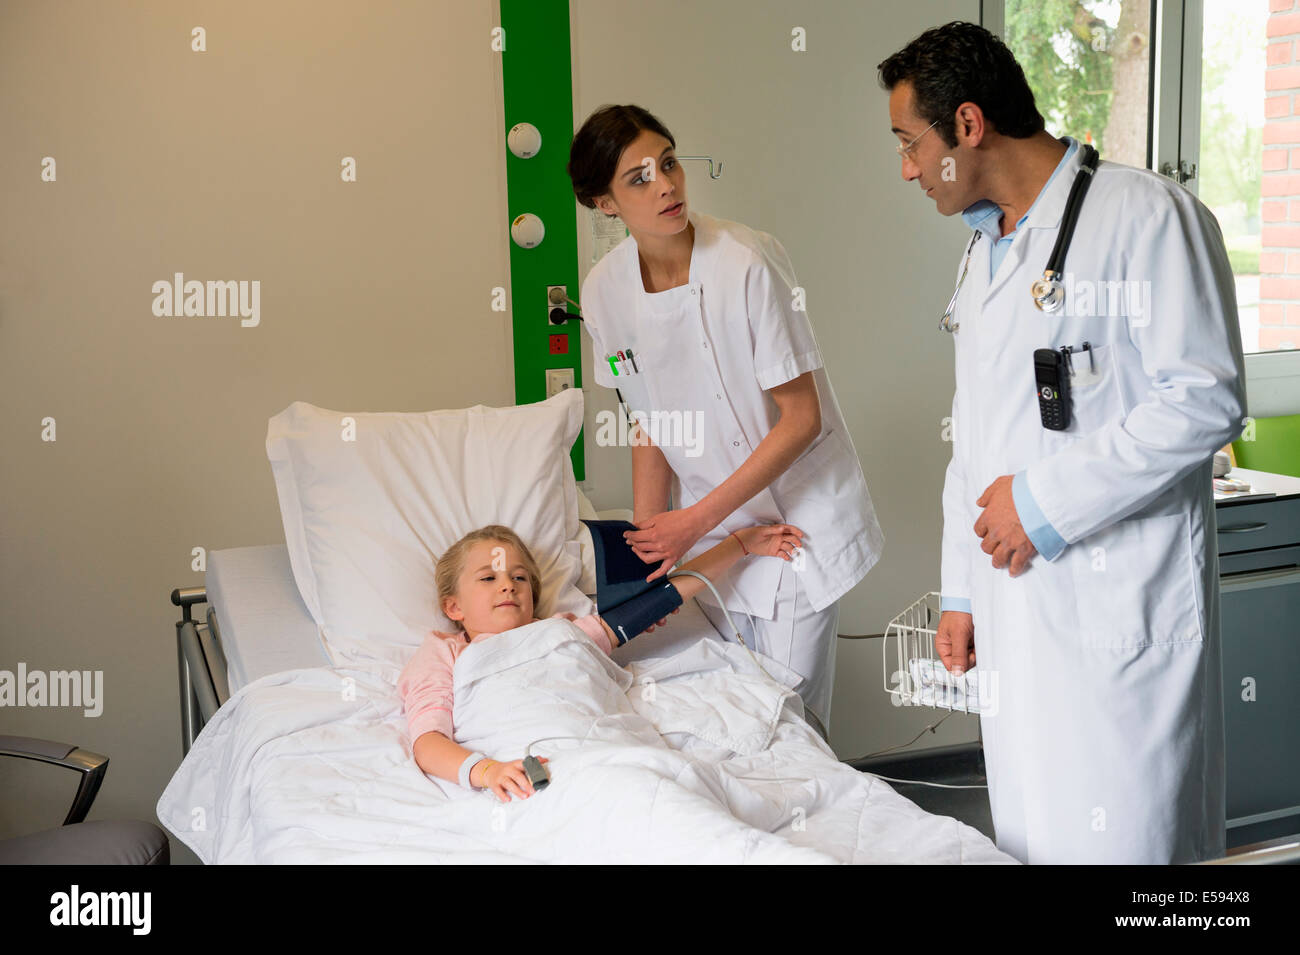 Auxiliaires médicaux à une jeune fille l'examen patient in hospital bed Banque D'Images